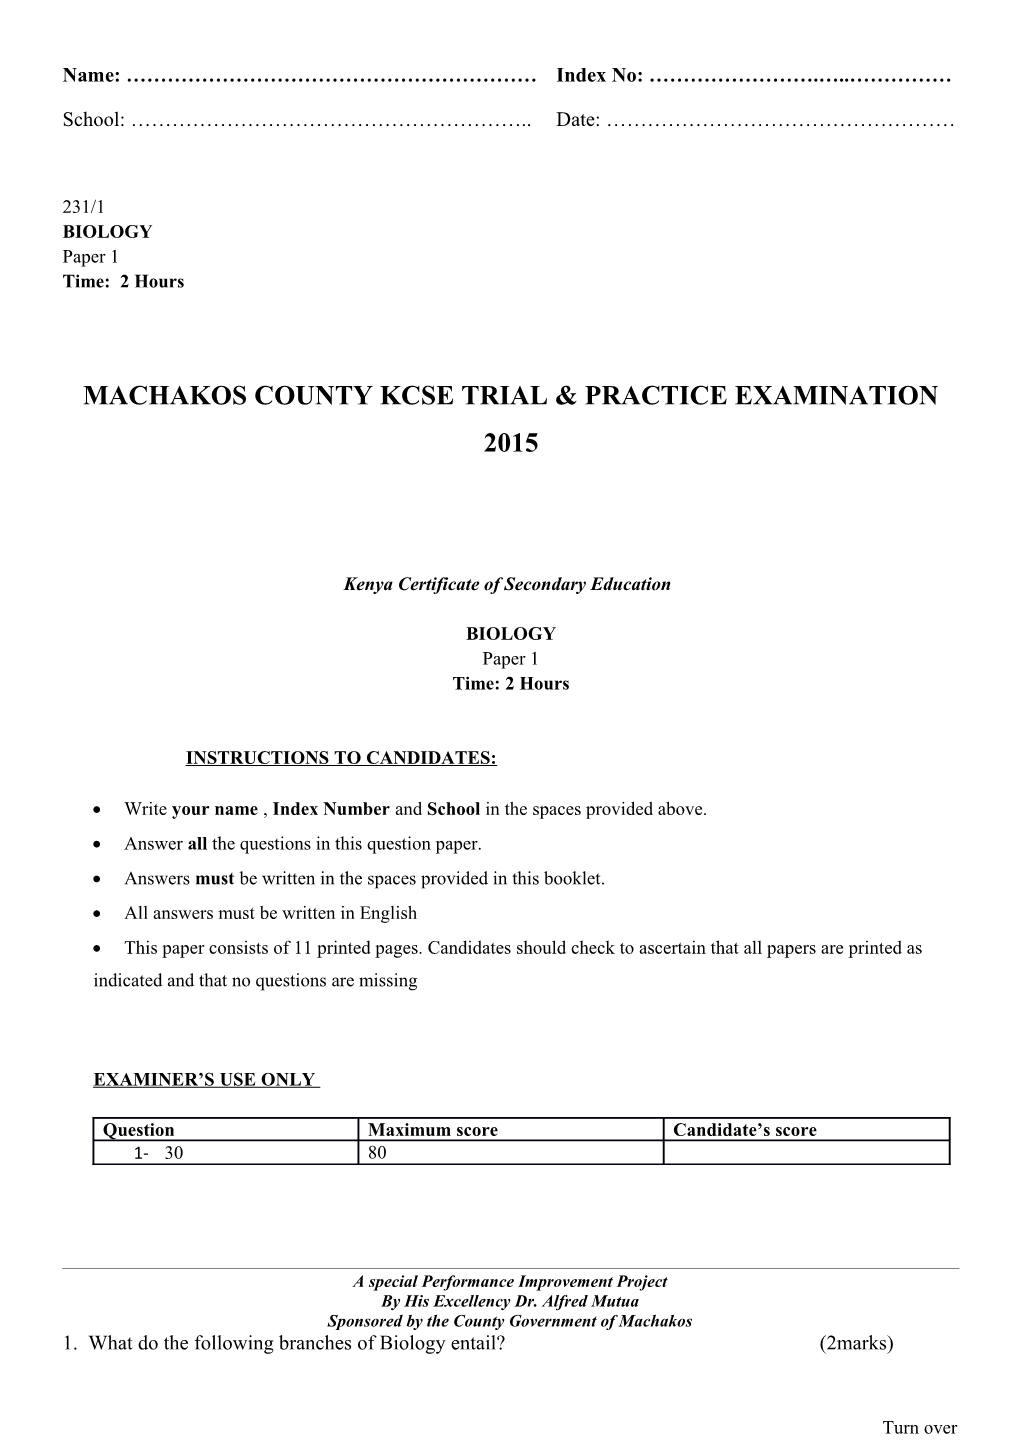 Machakos County Kcse Trial & Practice Examination 2015